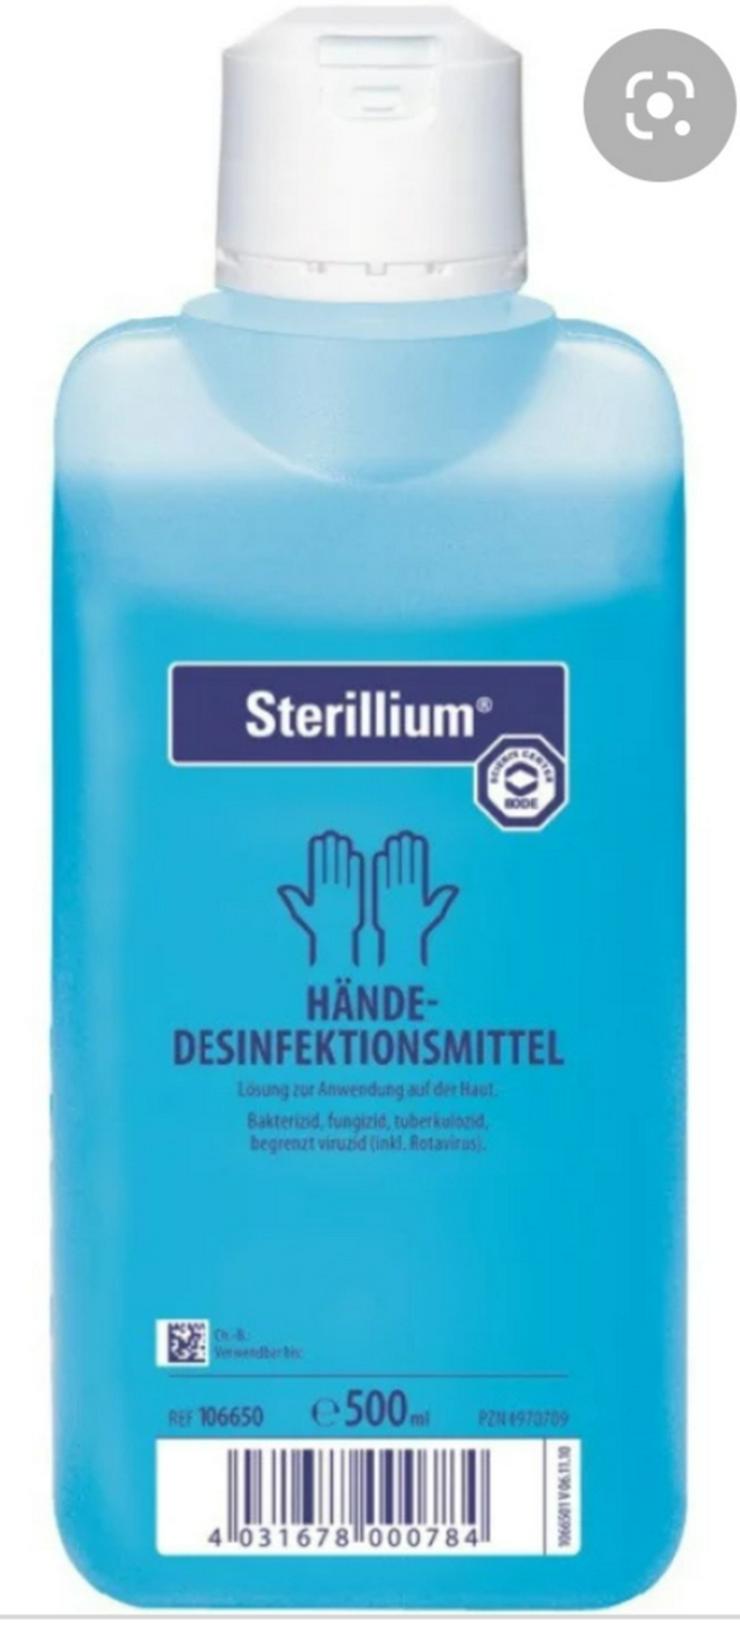 500 ml Bode Desinfektionsmittel Hände Desinfektion - Hygiene & Desinfektion - Bild 2